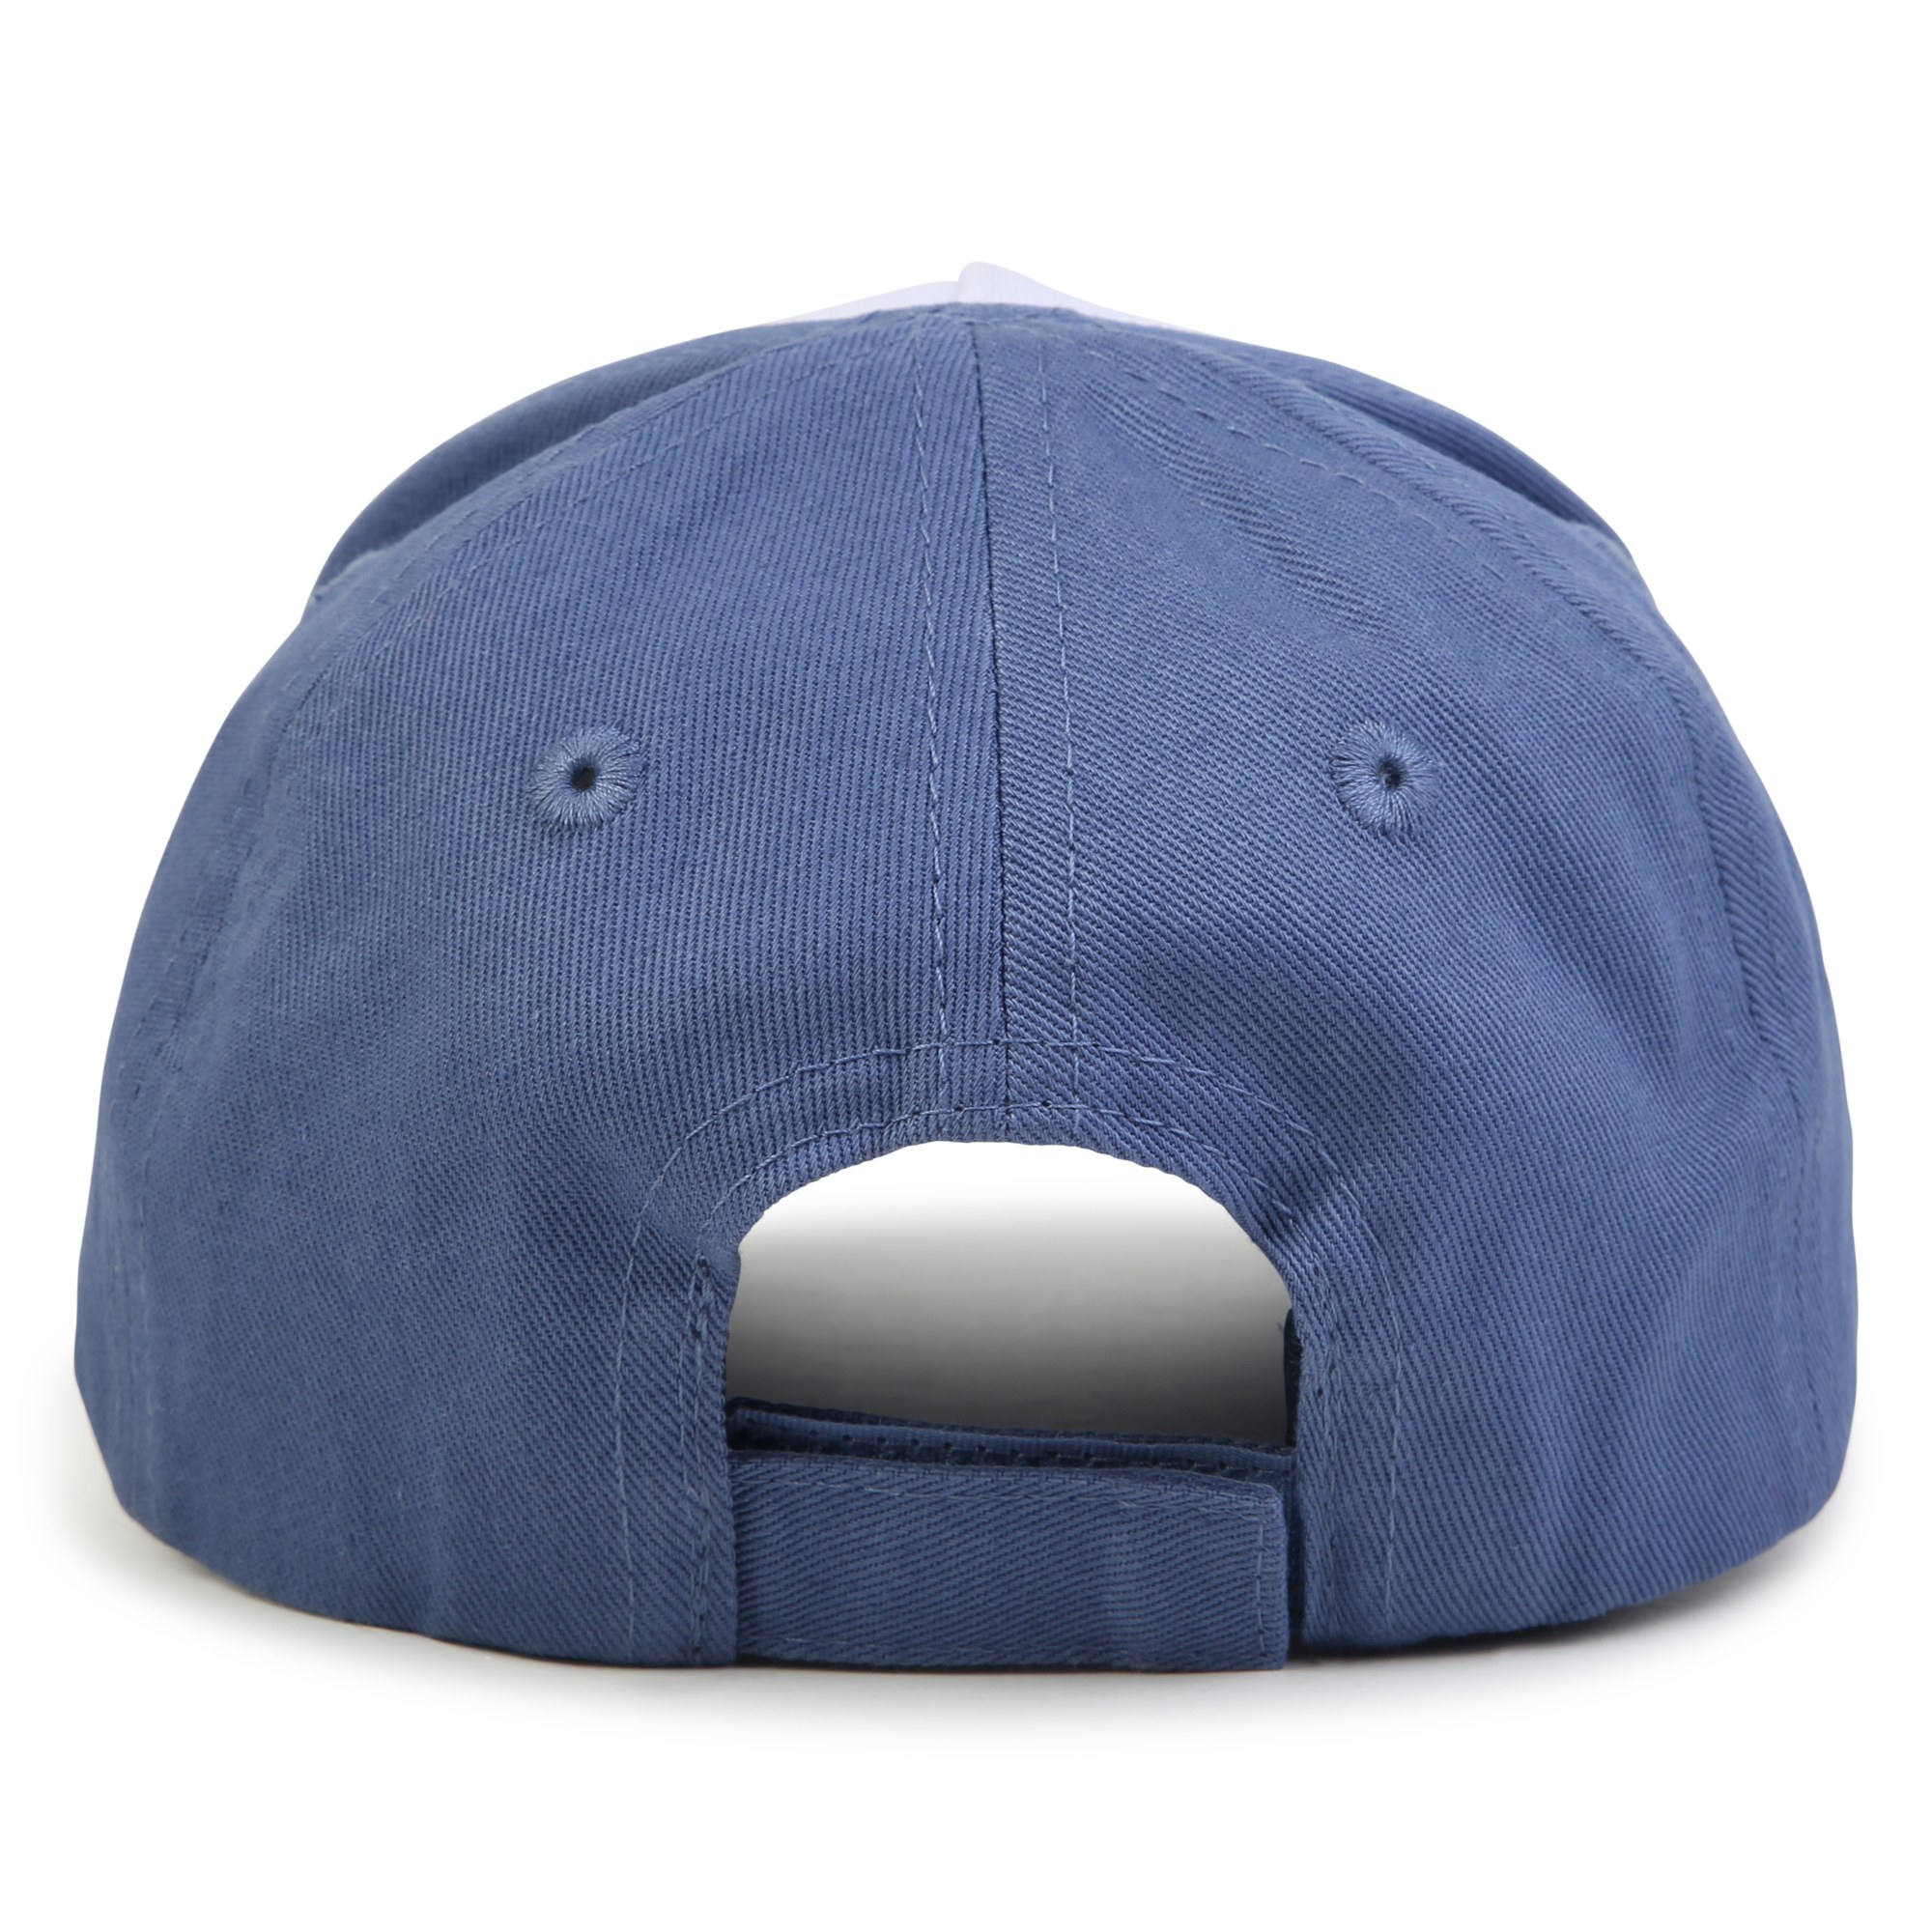 Cotton baseball cap BOSS for BOY